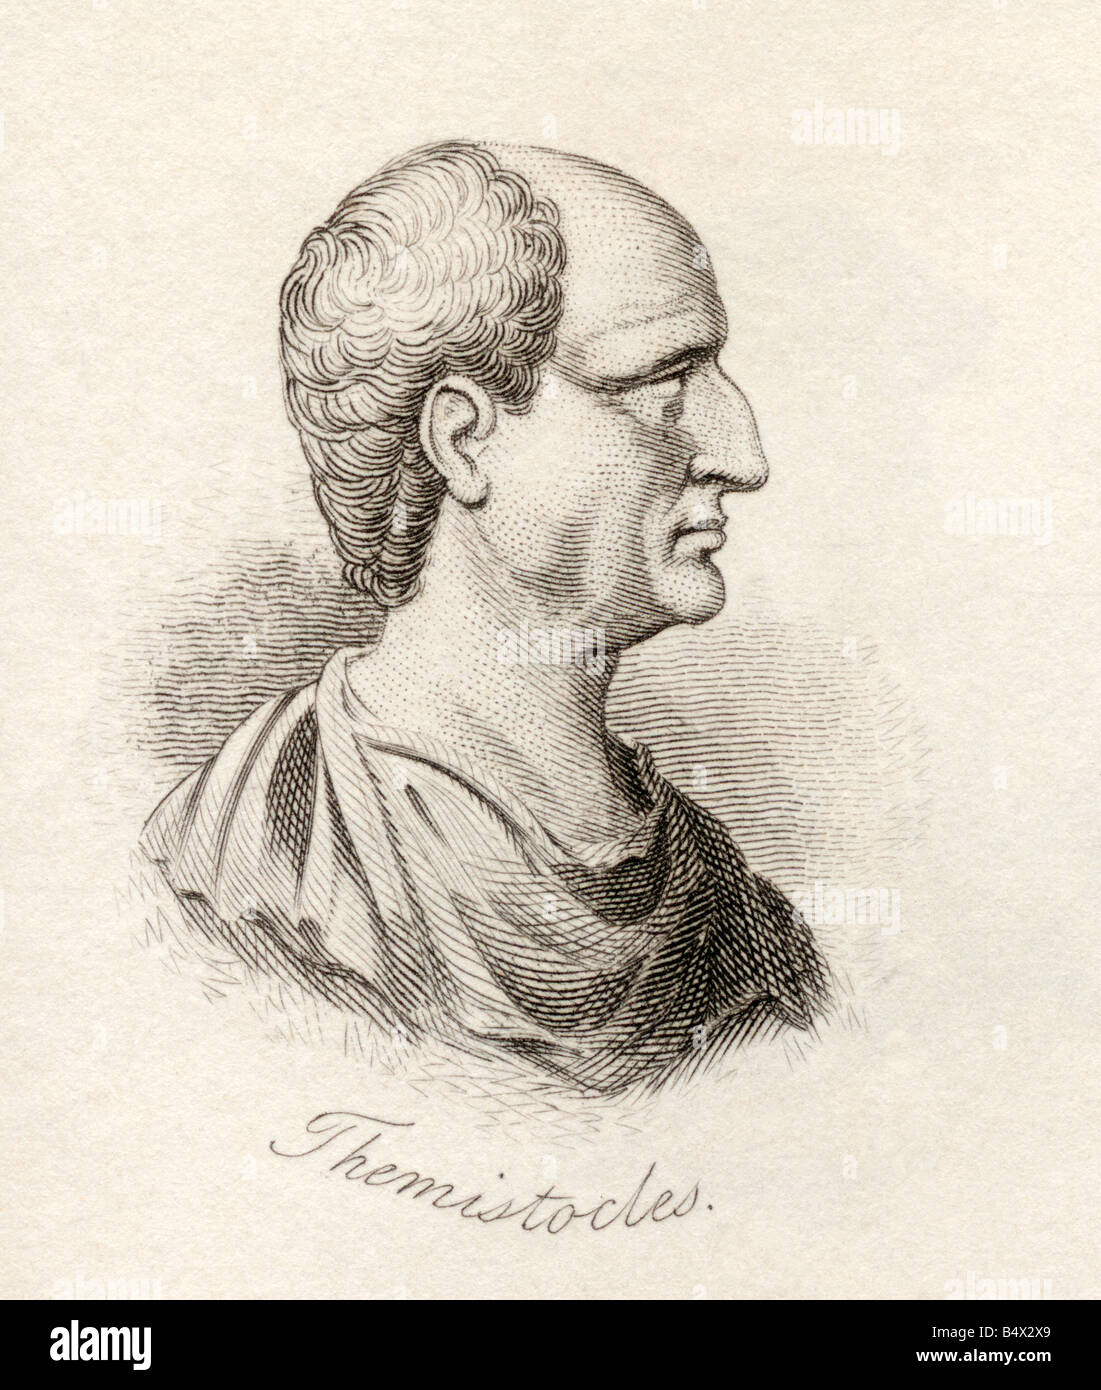 Themistocles, c. 524 à 459 BC. Militaire et homme d'État athénien. Tiré du livre Crabbs Historical Dictionary, publié en 1825. Banque D'Images